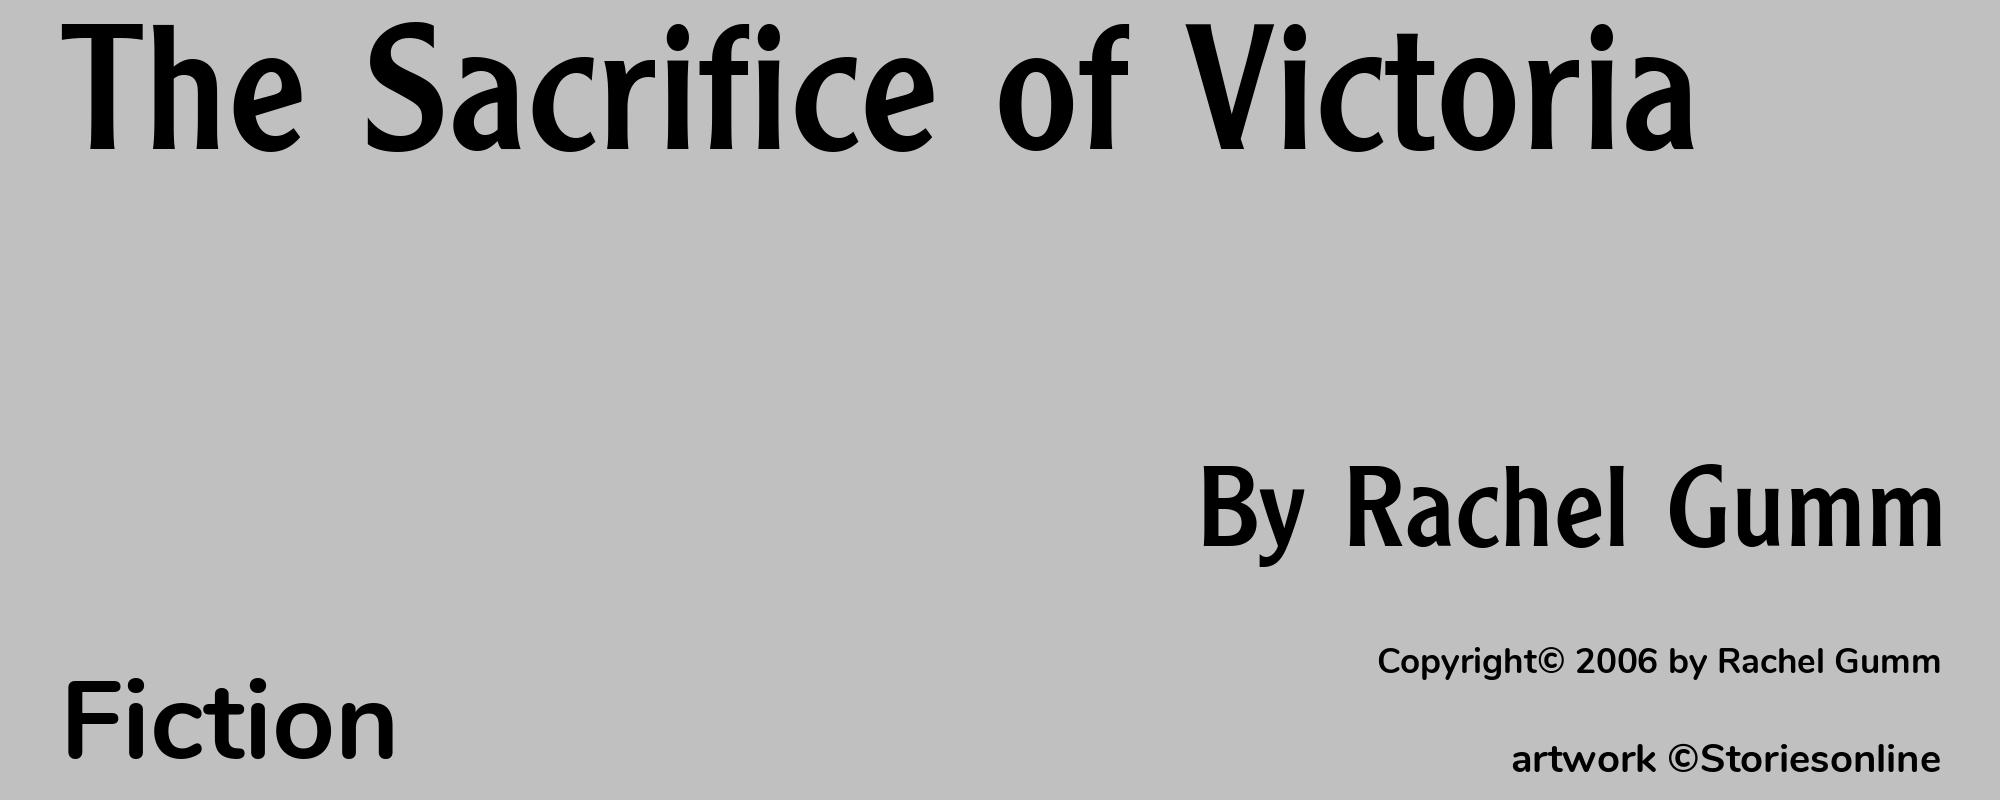 The Sacrifice of Victoria - Cover